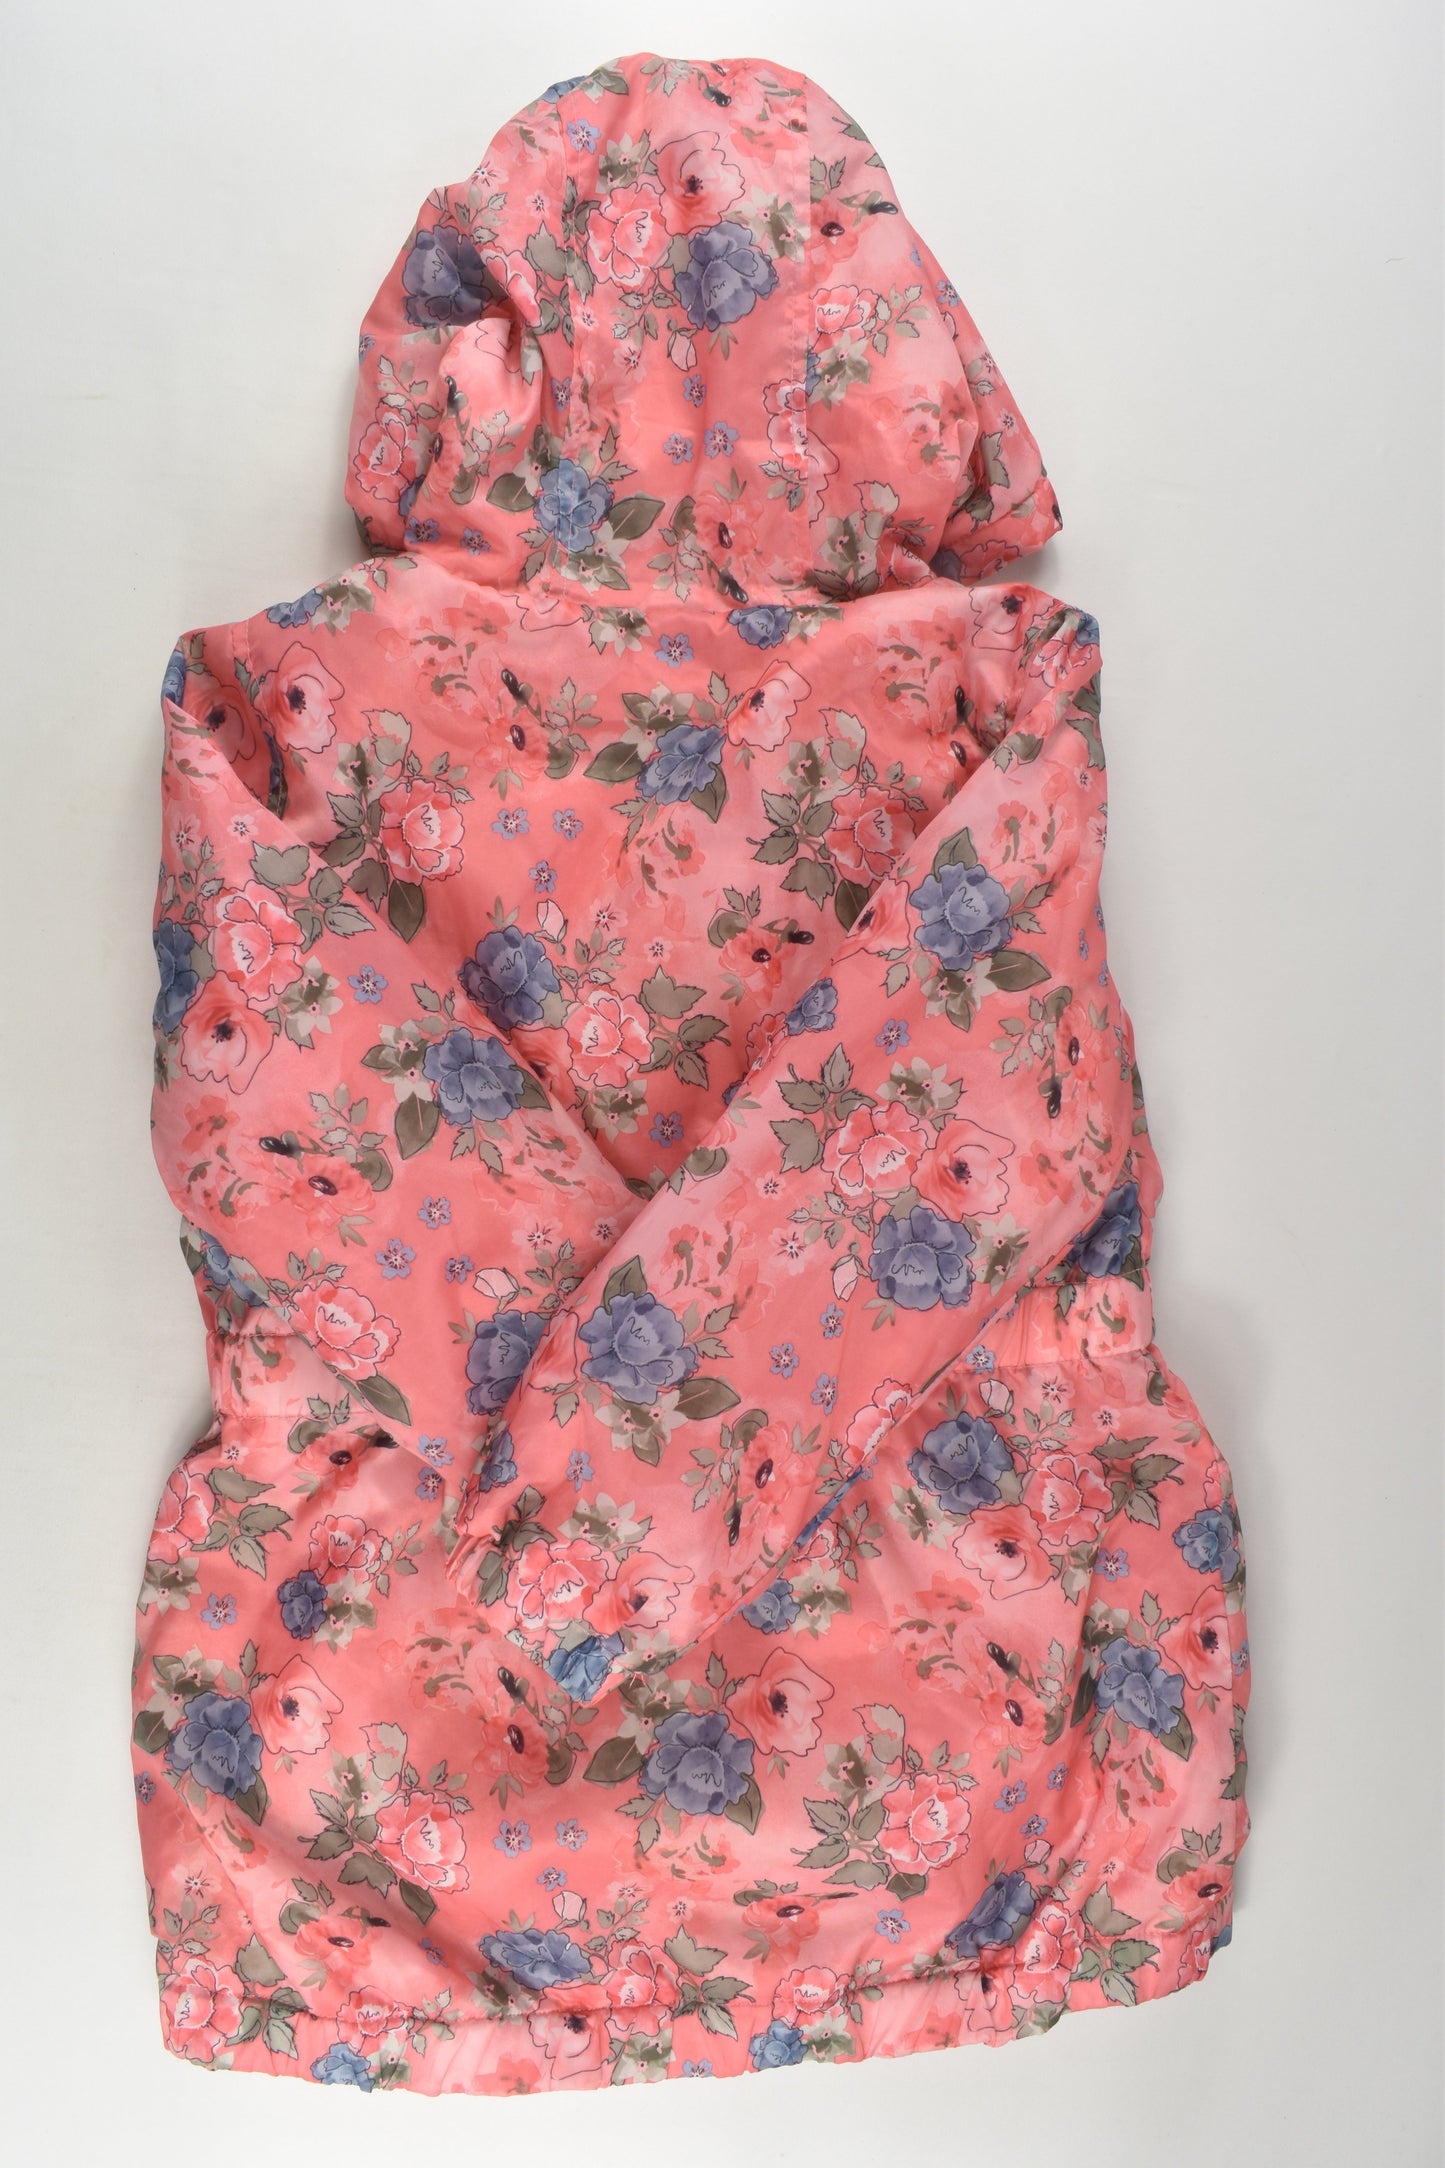 Target Size 7 Fleece Lined Floral Jacket